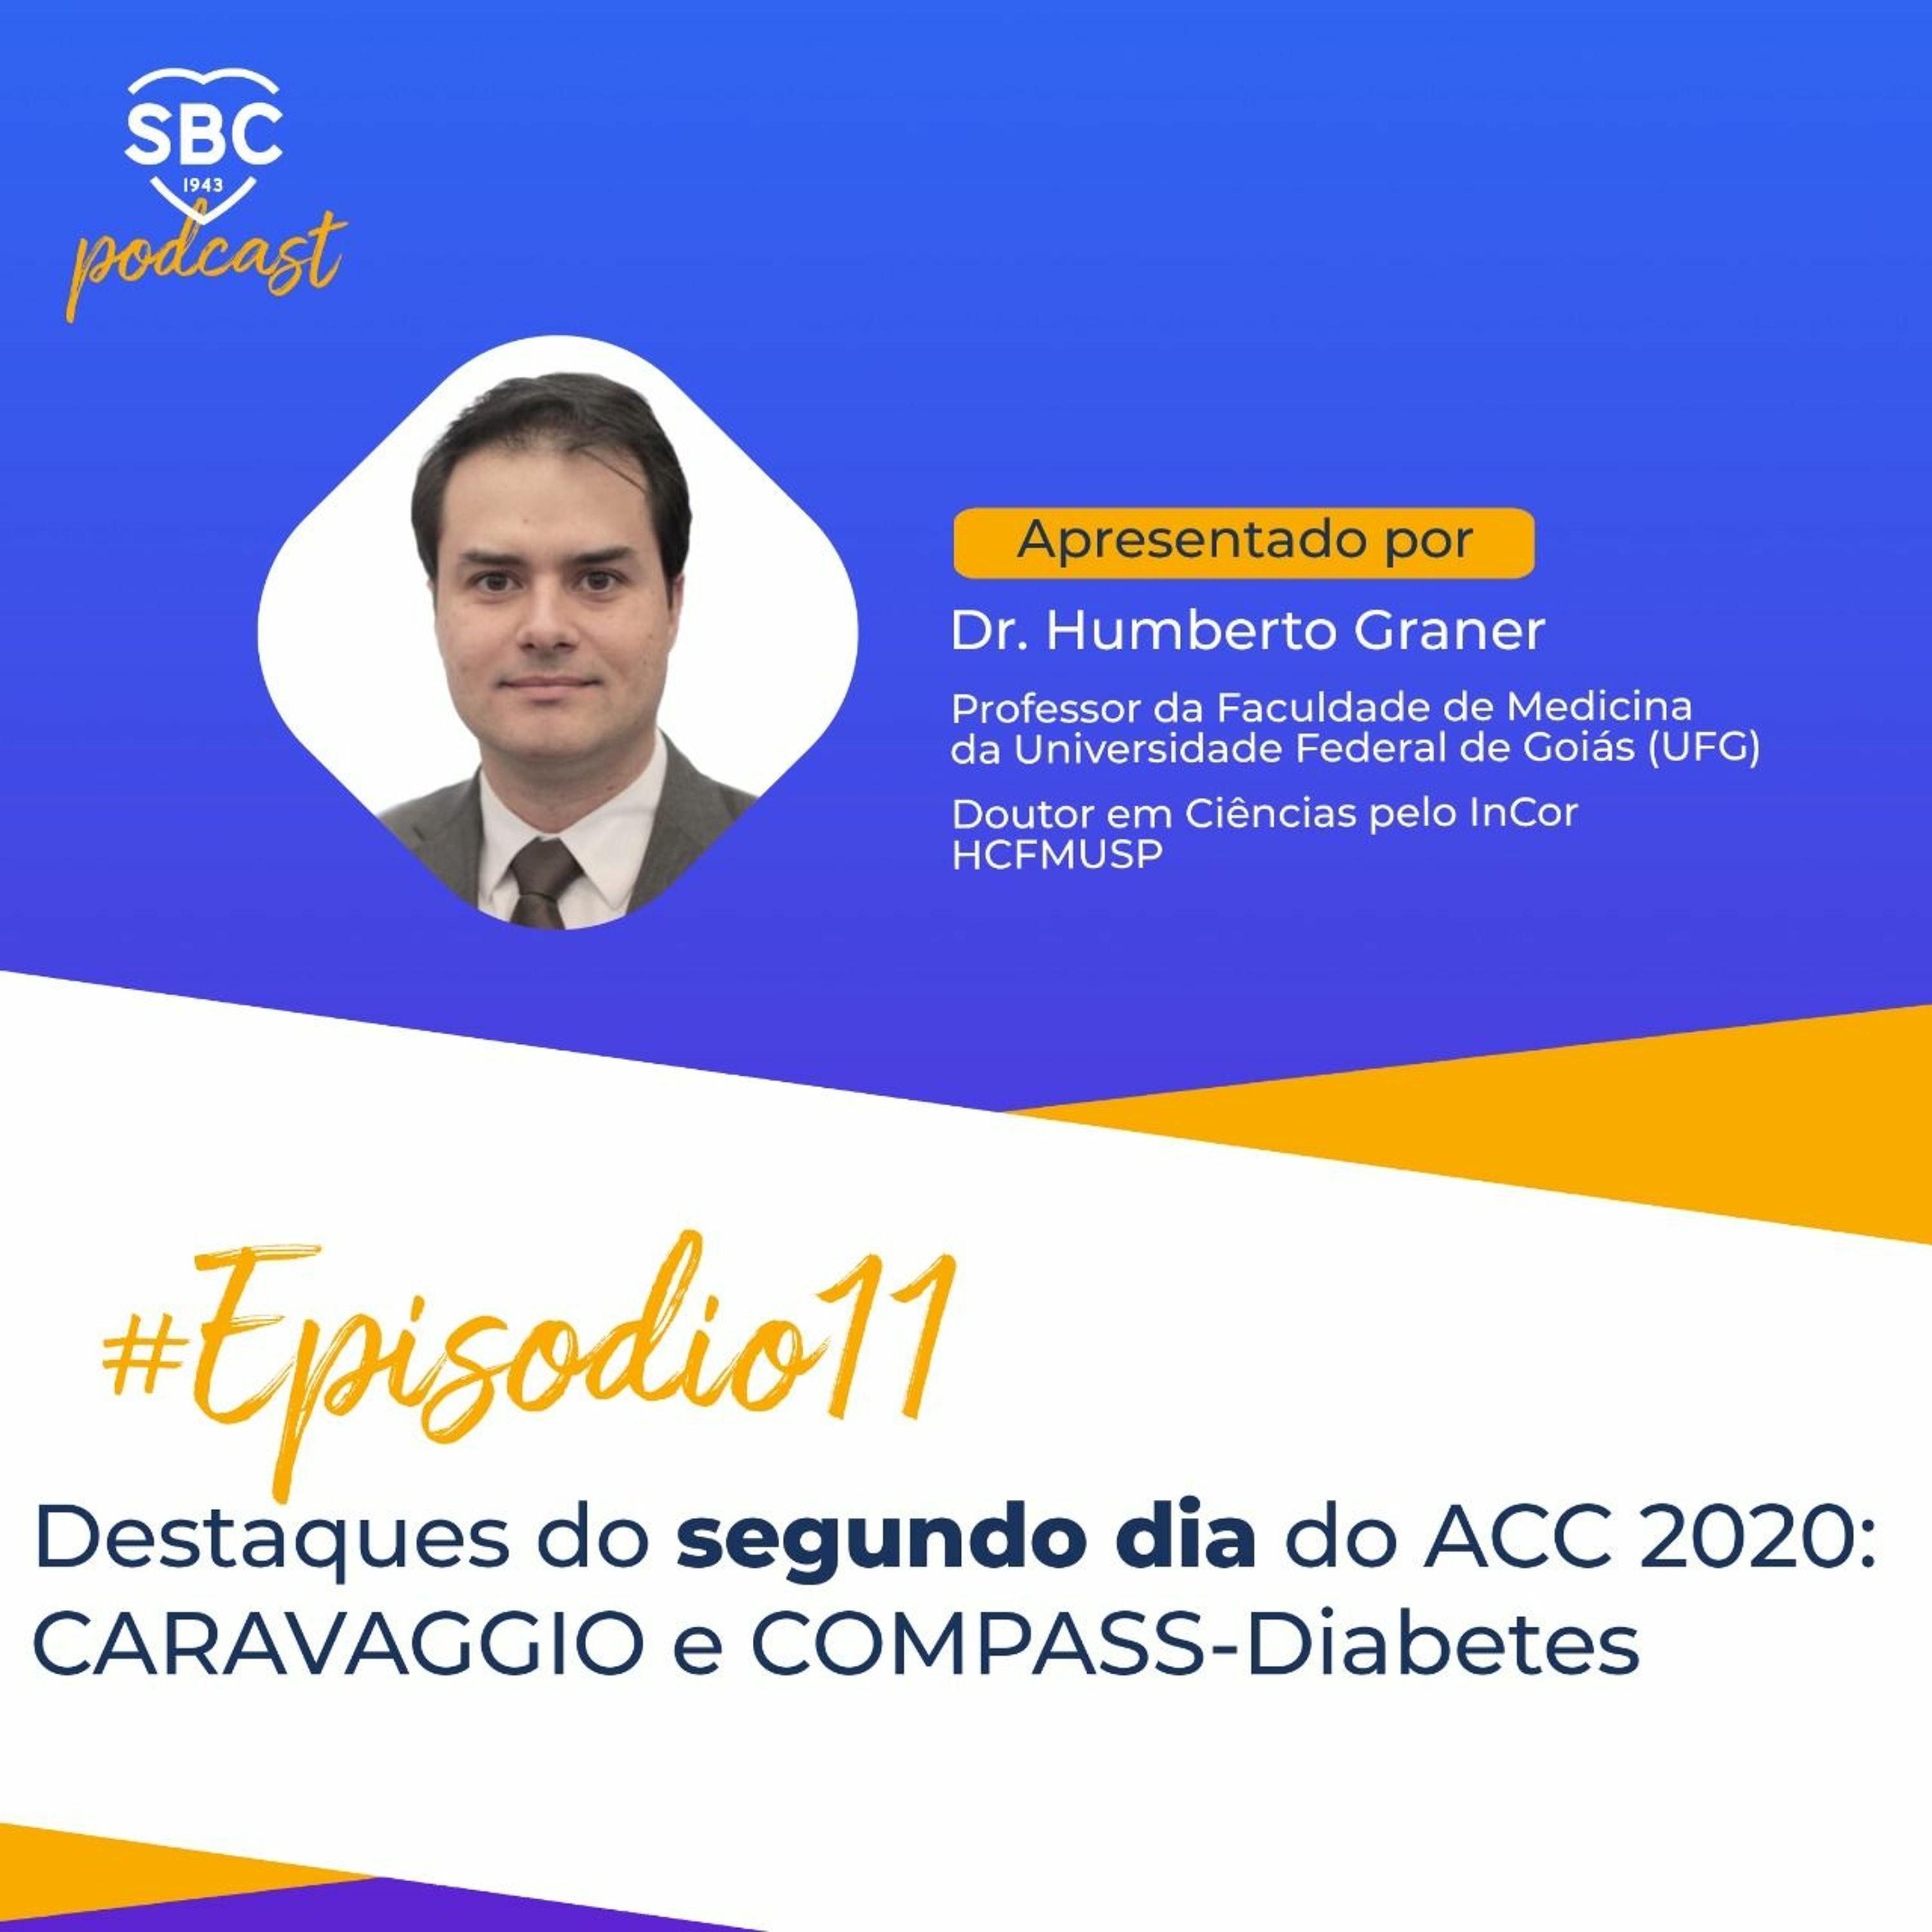 Neste podcast você fica por dentro de mais dois estudos importantes com anticoagulantes orais apresentados no segundo dia do ACC 2020: os estudos CARAVAGGIO e COMPASS-Diabetes